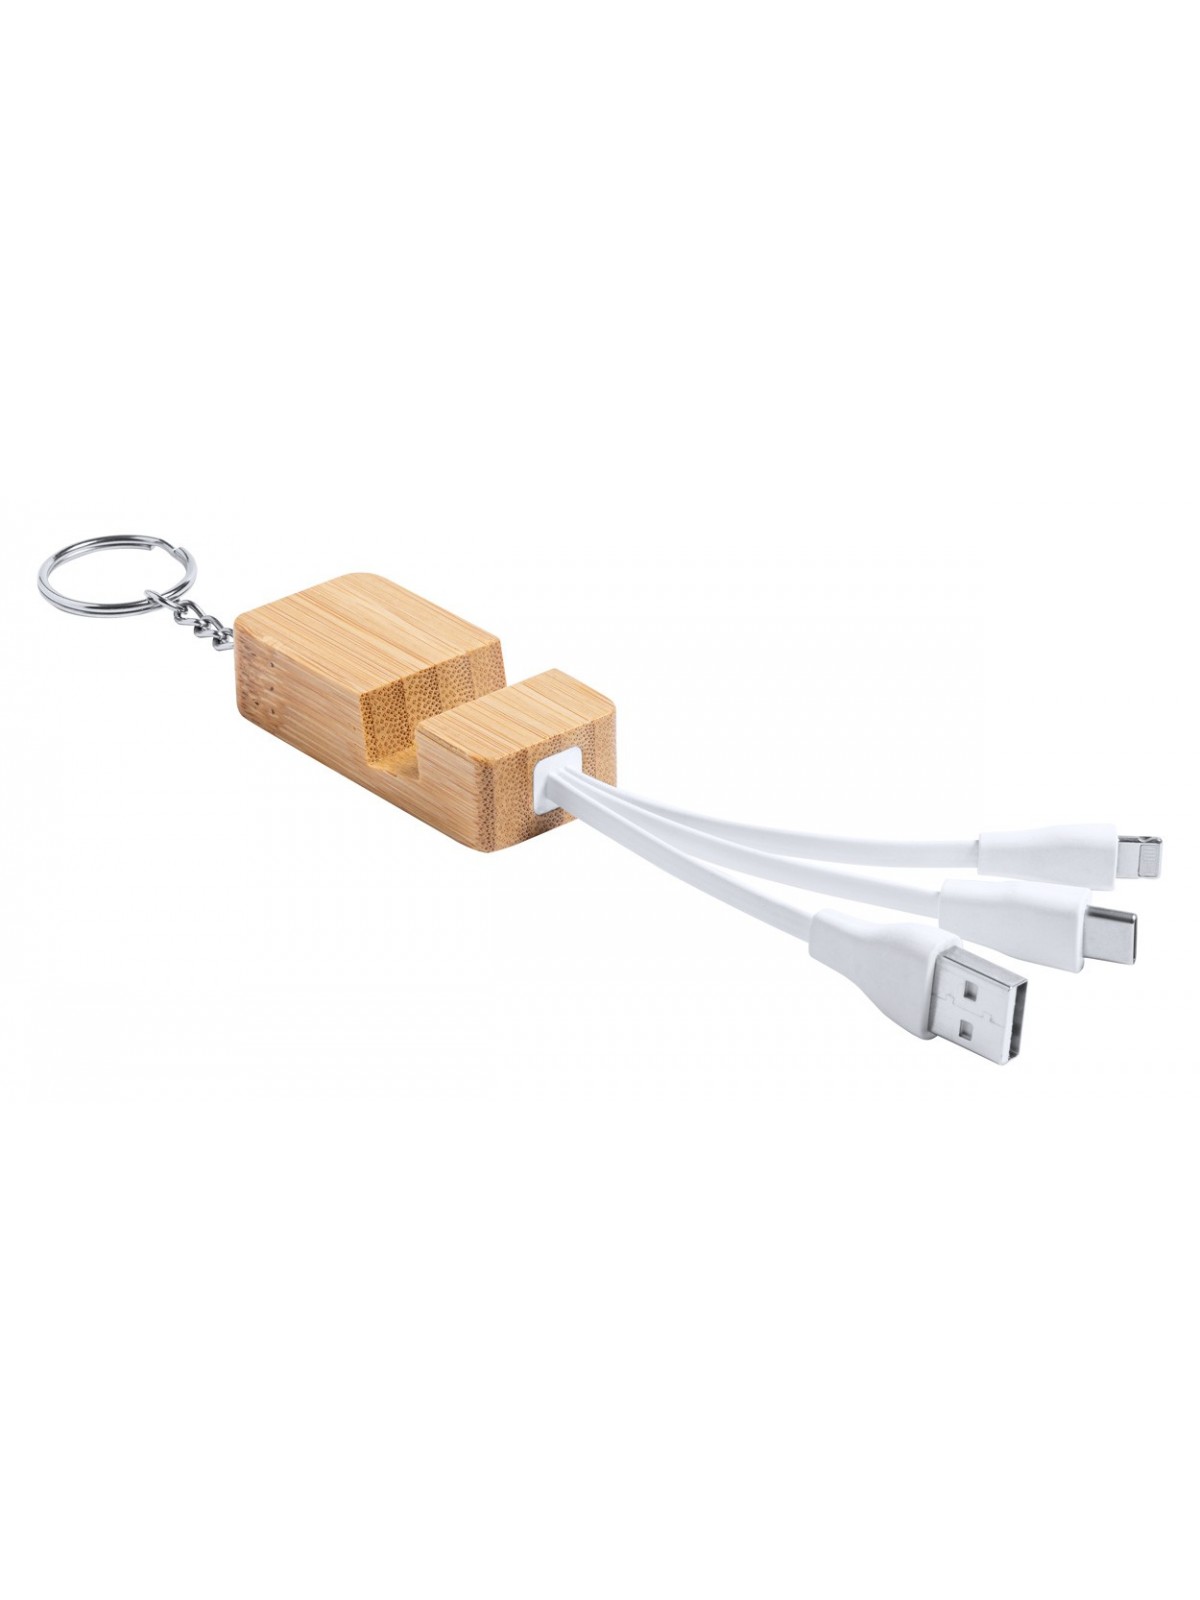 10-195 Câble chargeur USB en bambou personnalisé